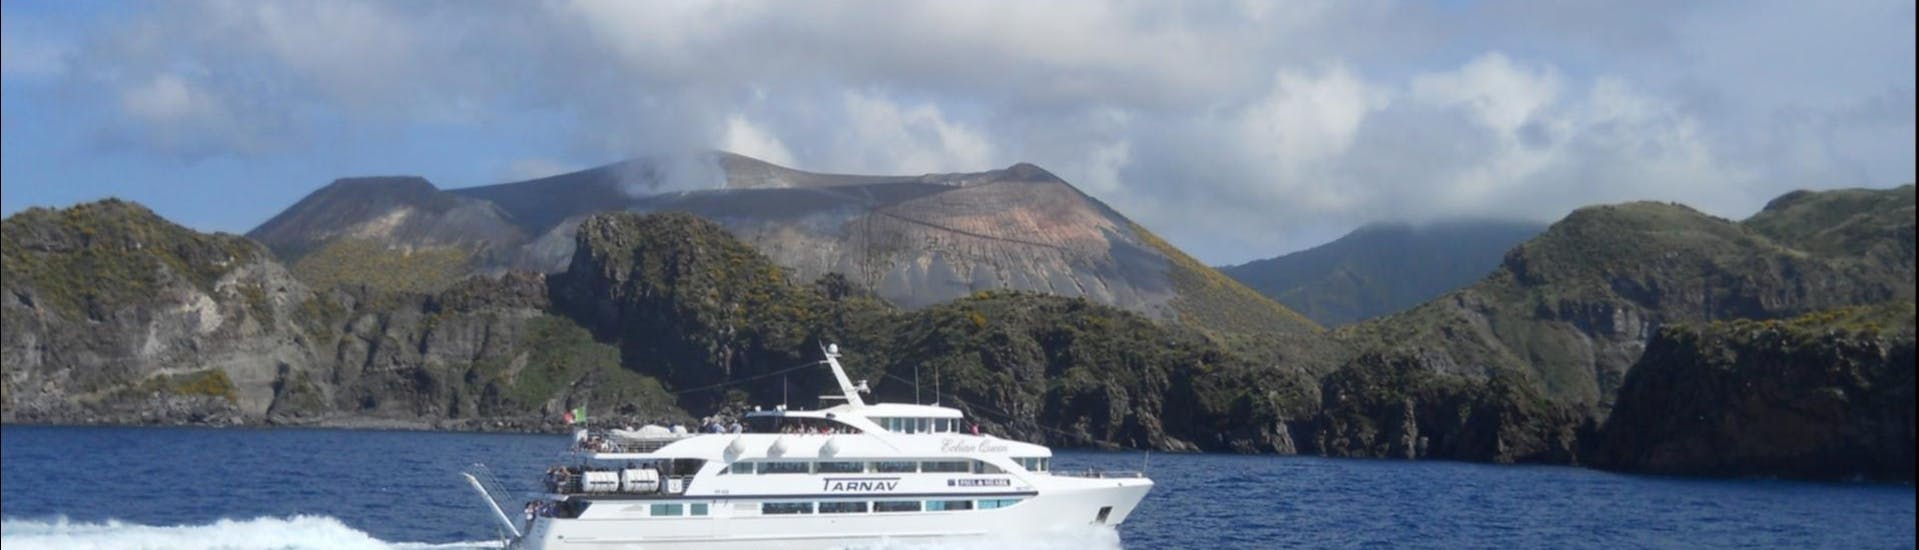 La barca è pronta a salpare per una nuova avventura nelle isole Eolie con Tarnav Tours Eolie.